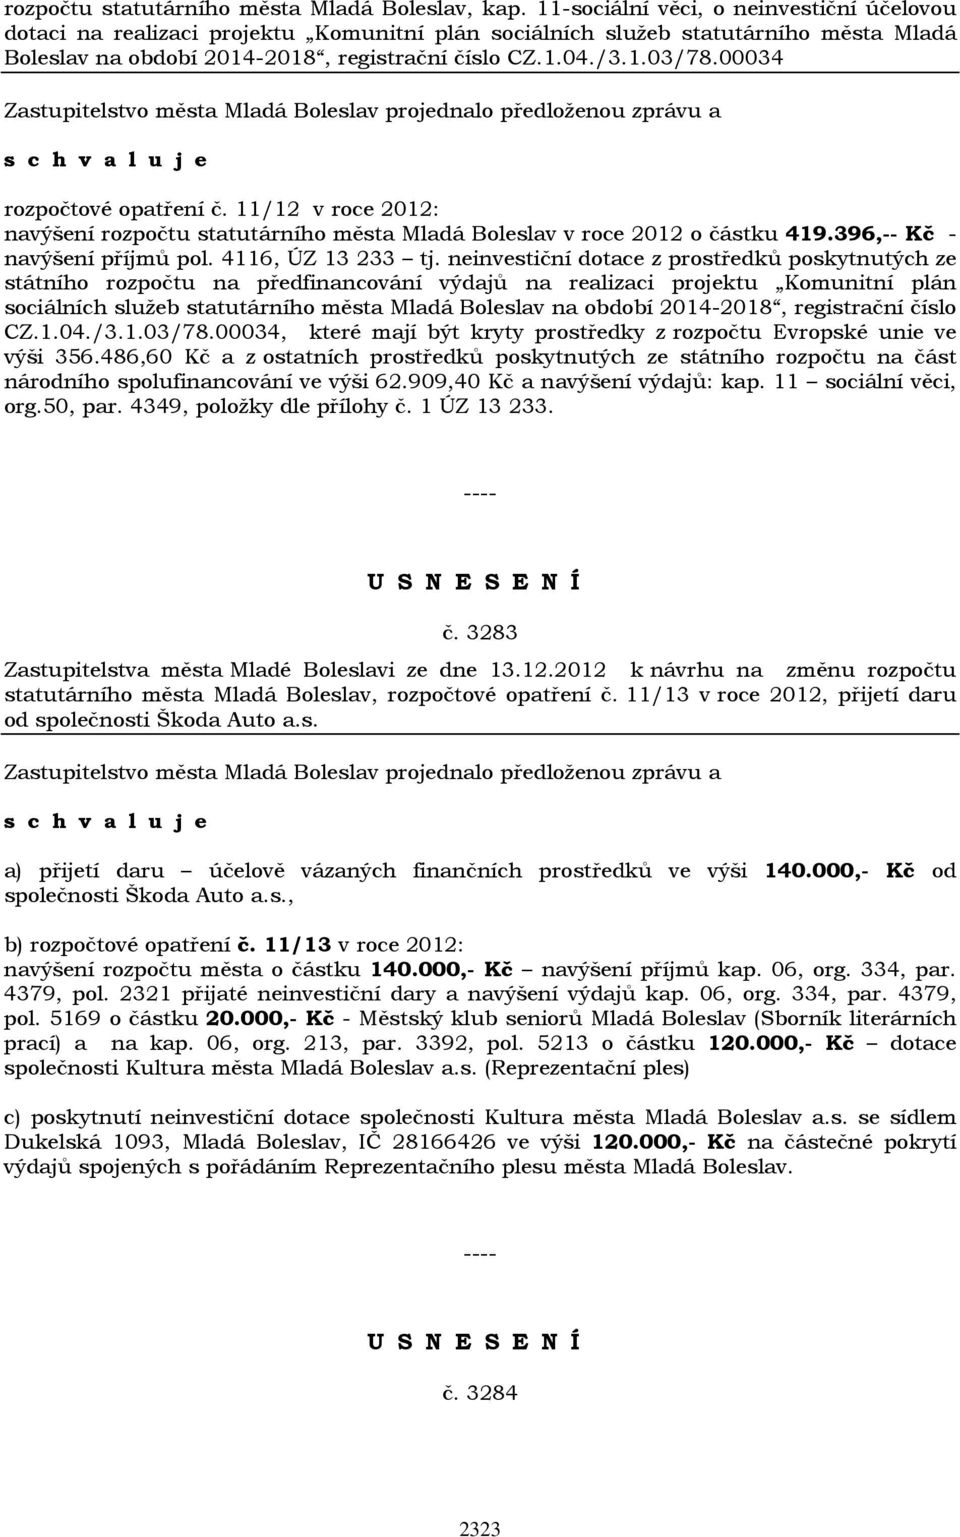 00034 rozpočtové opatření č. 11/12 v roce 2012: navýšení rozpočtu statutárního města Mladá Boleslav v roce 2012 o částku 419.396,-- Kč - navýšení příjmů pol. 4116, ÚZ 13 233 tj.